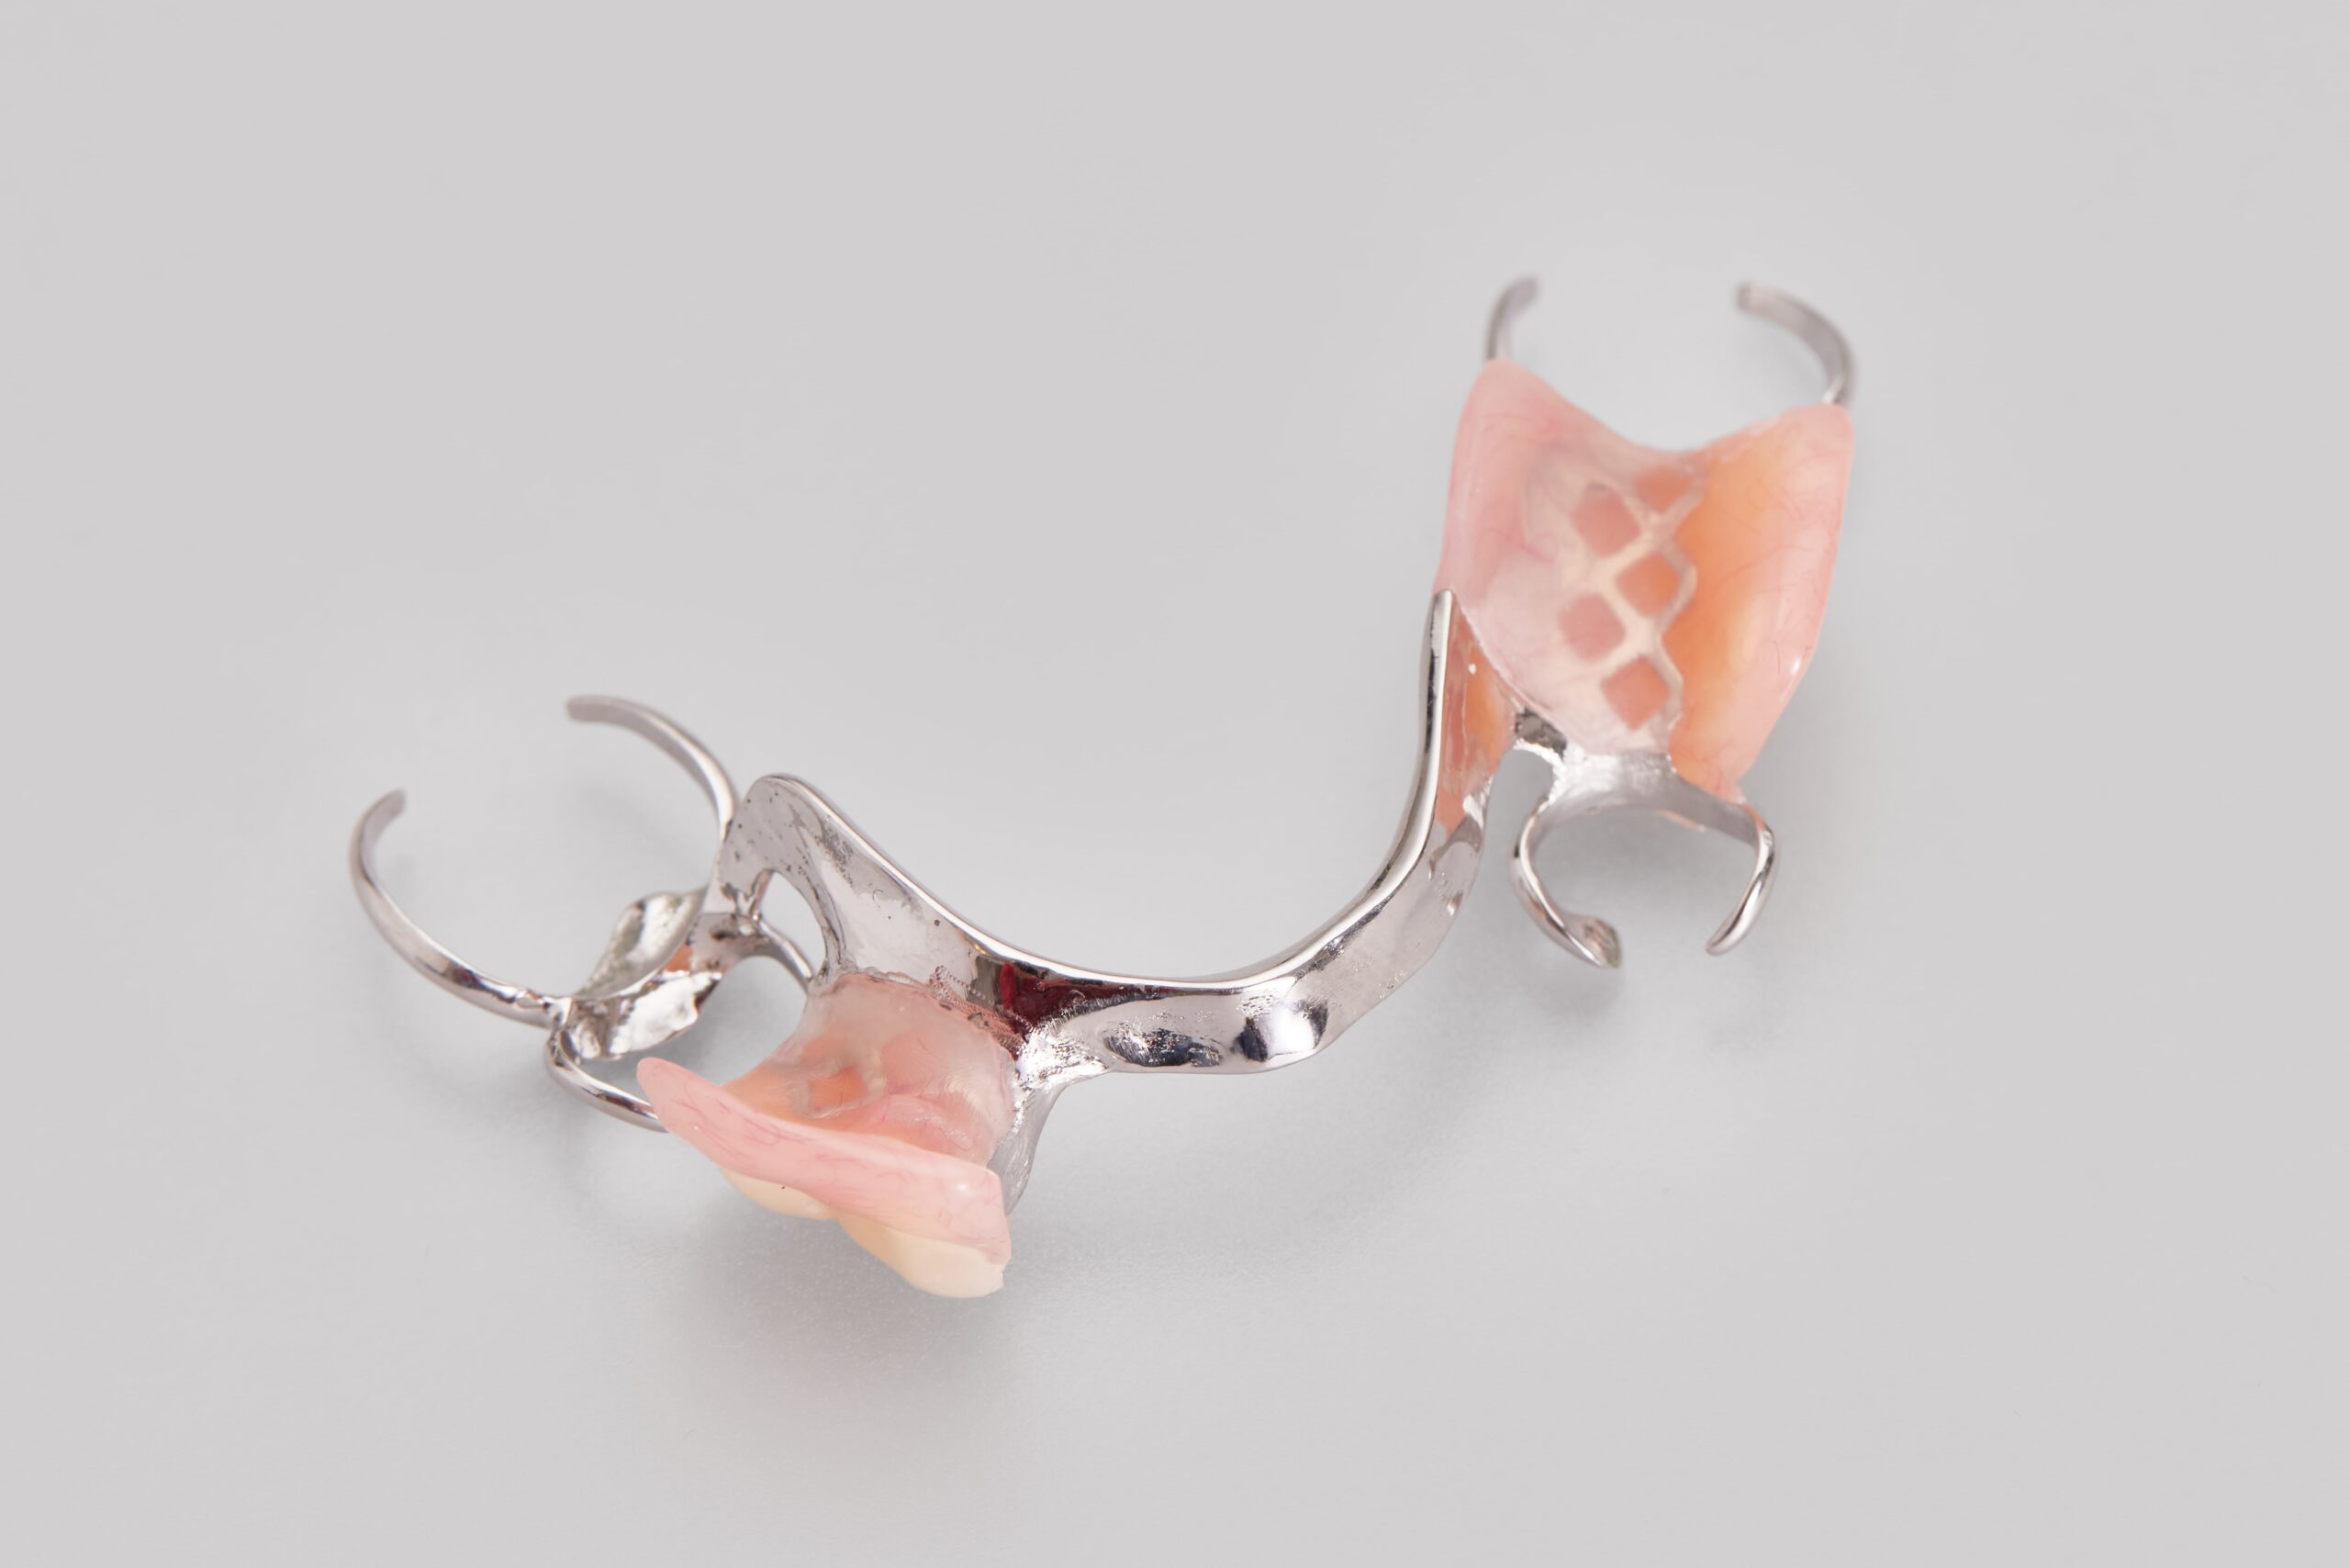 cast metal partial dentures